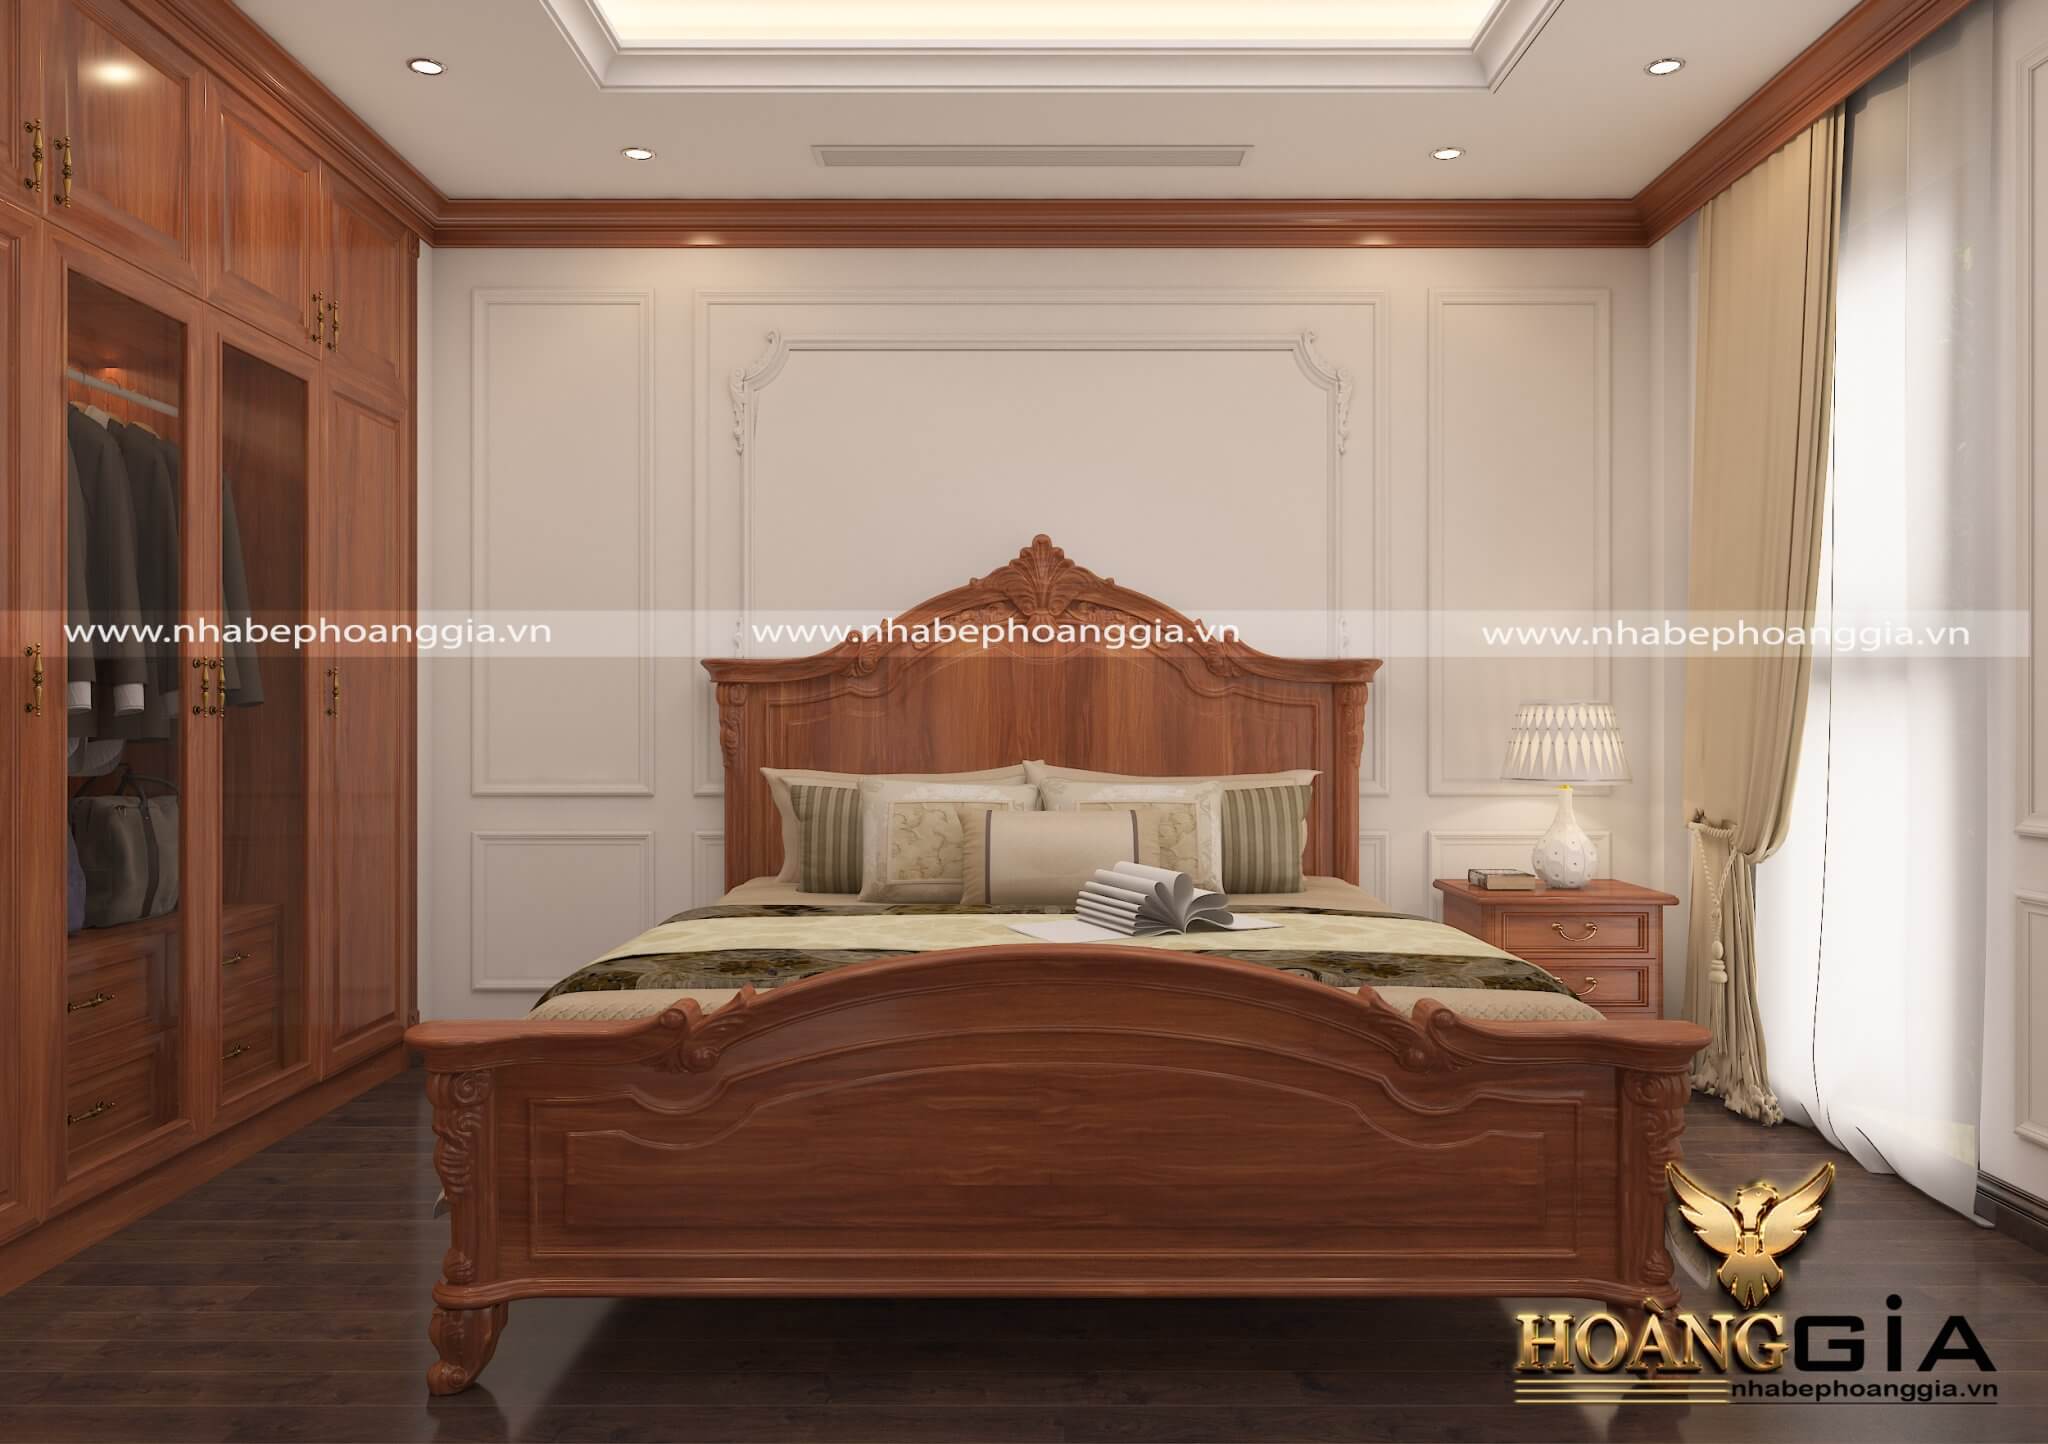 Mẫu thiết kế phòng ngủ gỗ tự nhiên phong cách tân cổ điển lịch lãm ...